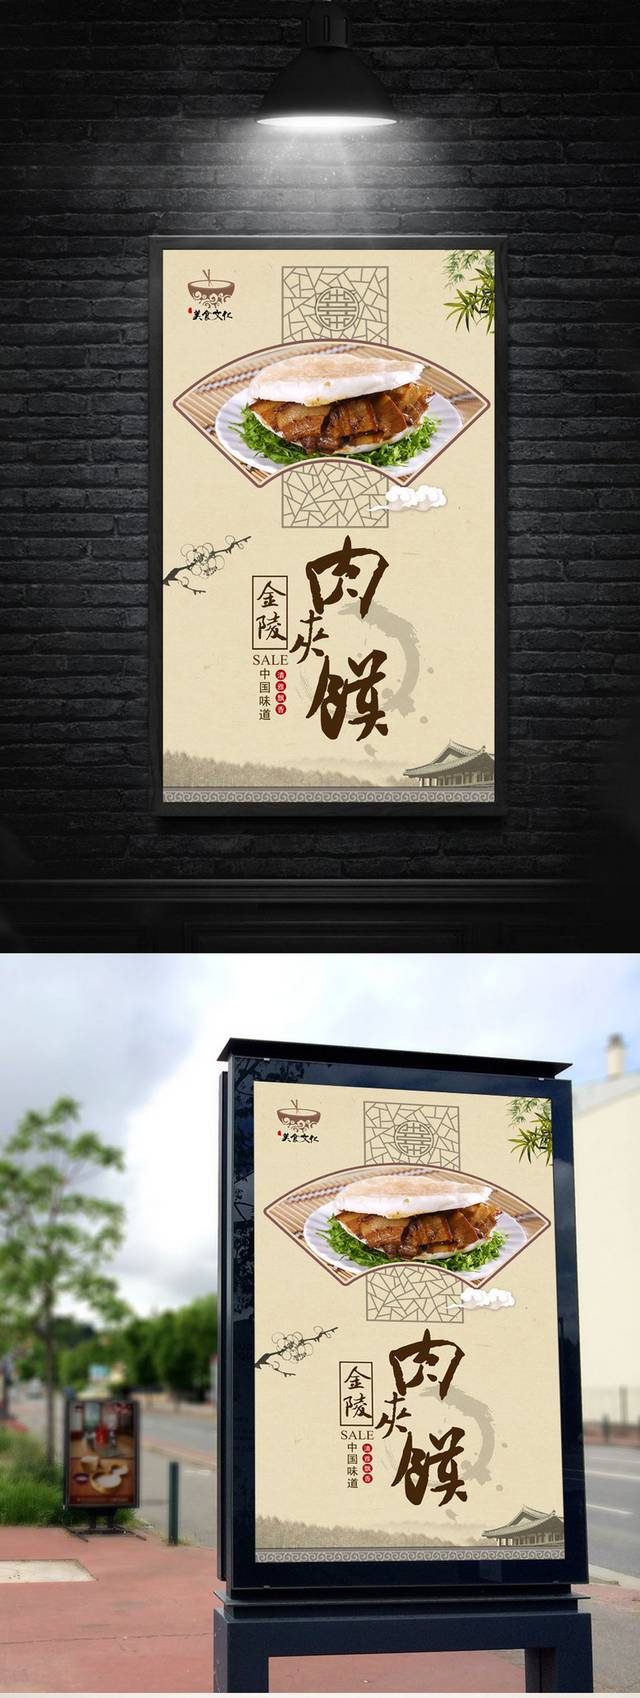 中国风经典肉夹馍宣传海报设计psd